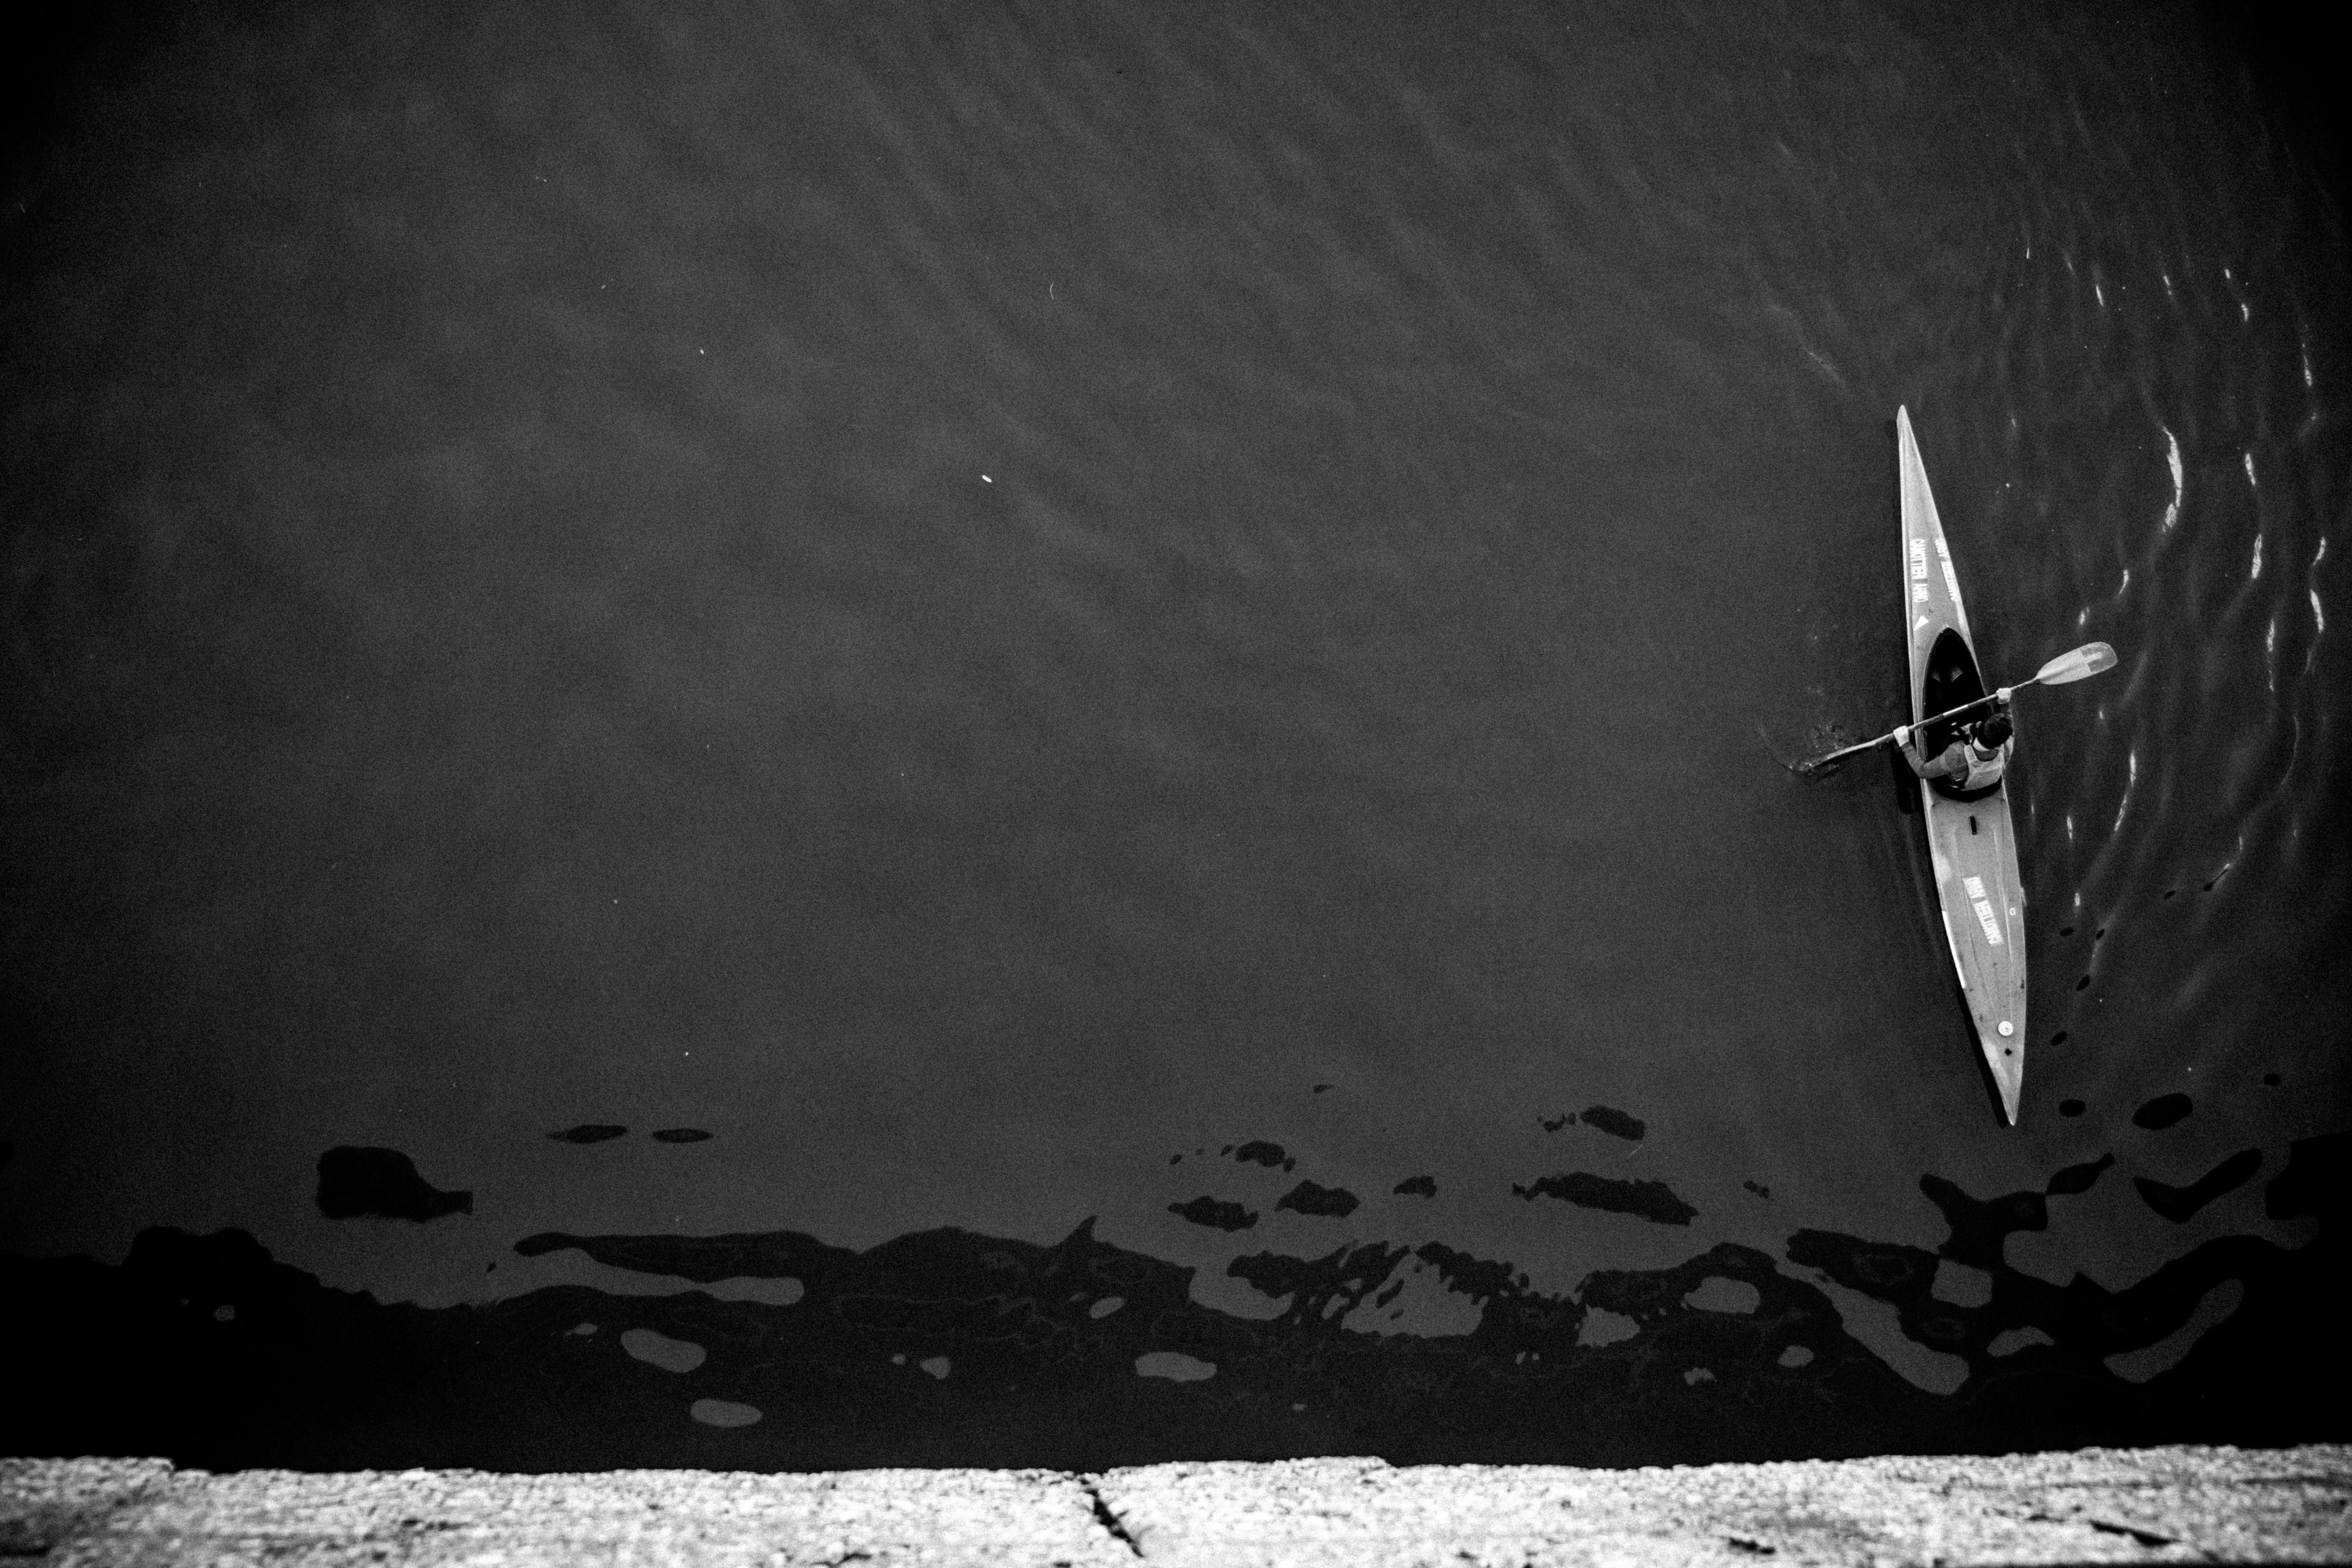 Canoa in Arno di reysharks